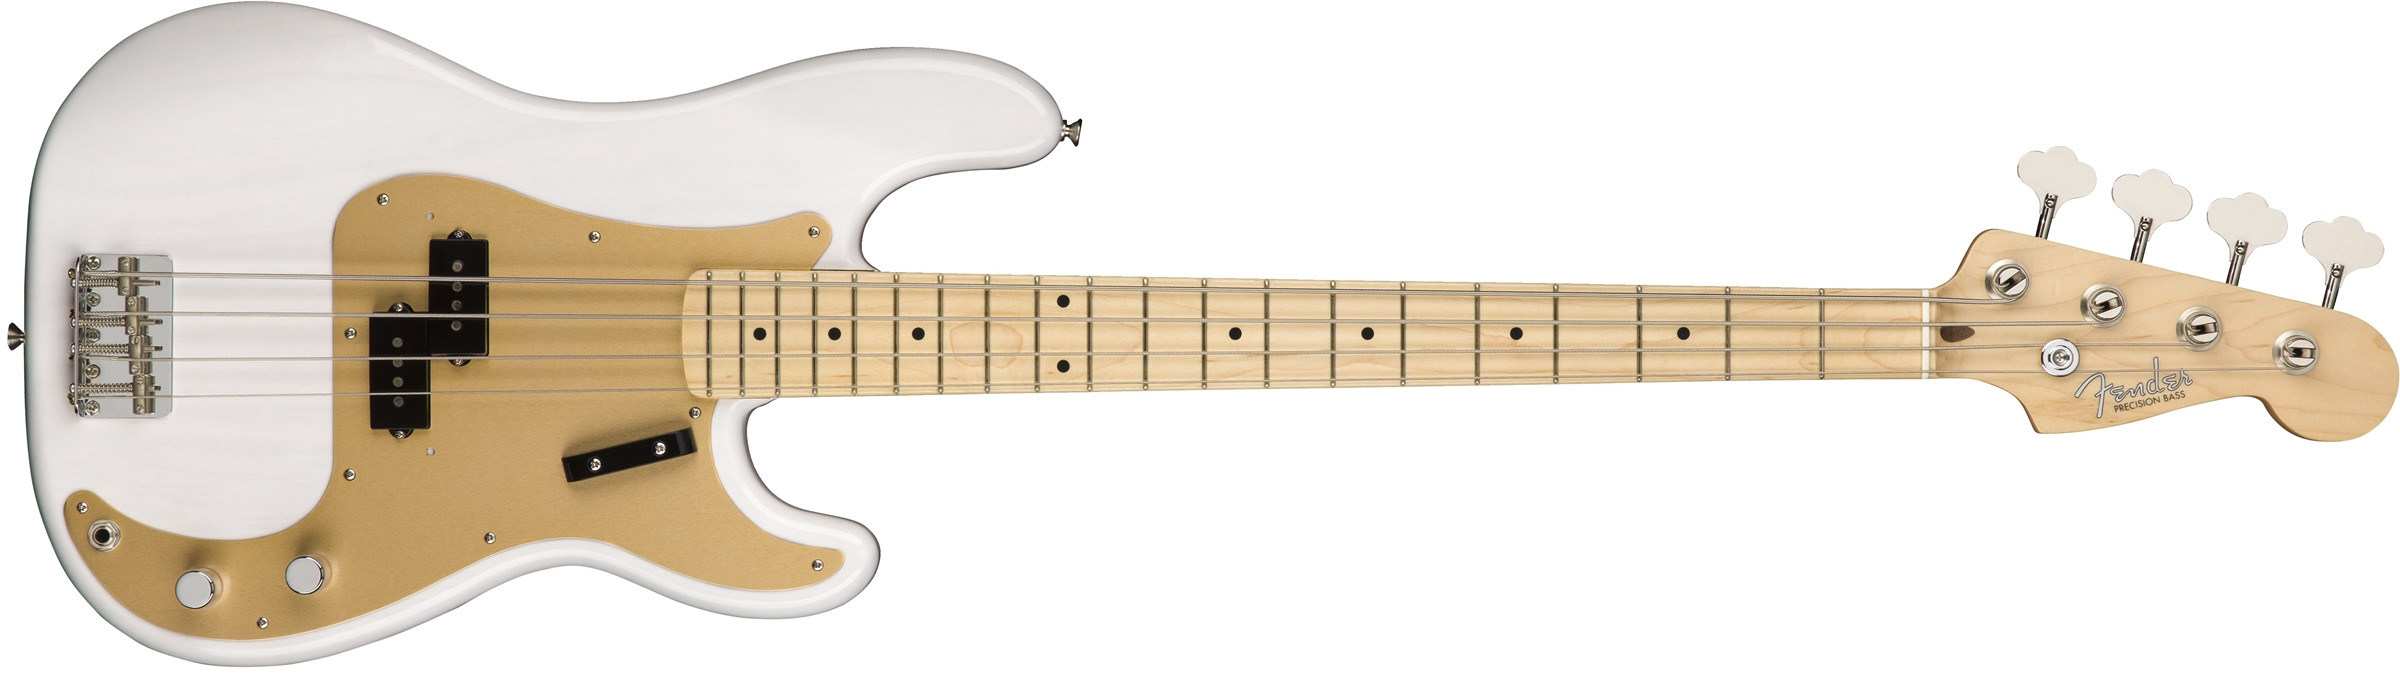 Hlavní obrázek PB modely FENDER American Original 50s Precision Bass White Blonde Maple